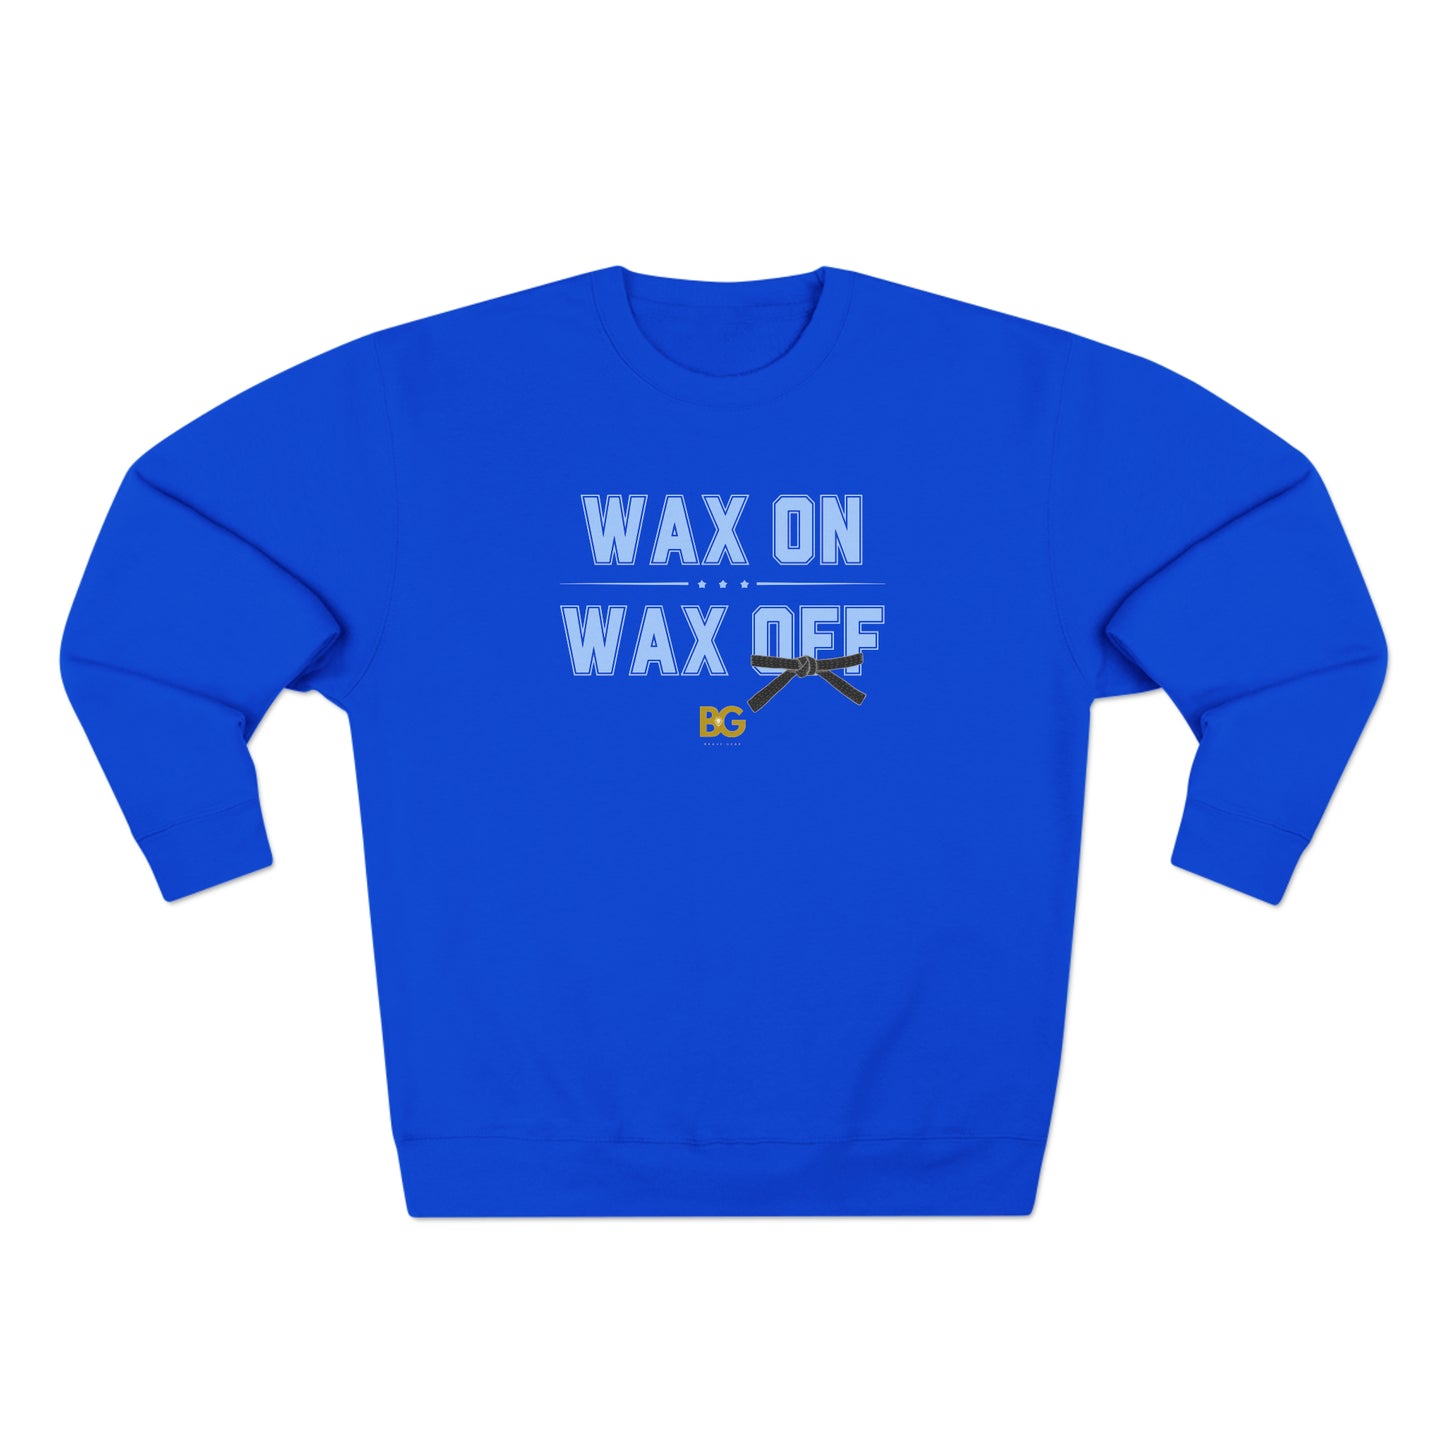 BG "Wax On - Wax Off" Premium Crewneck Sweatshirt